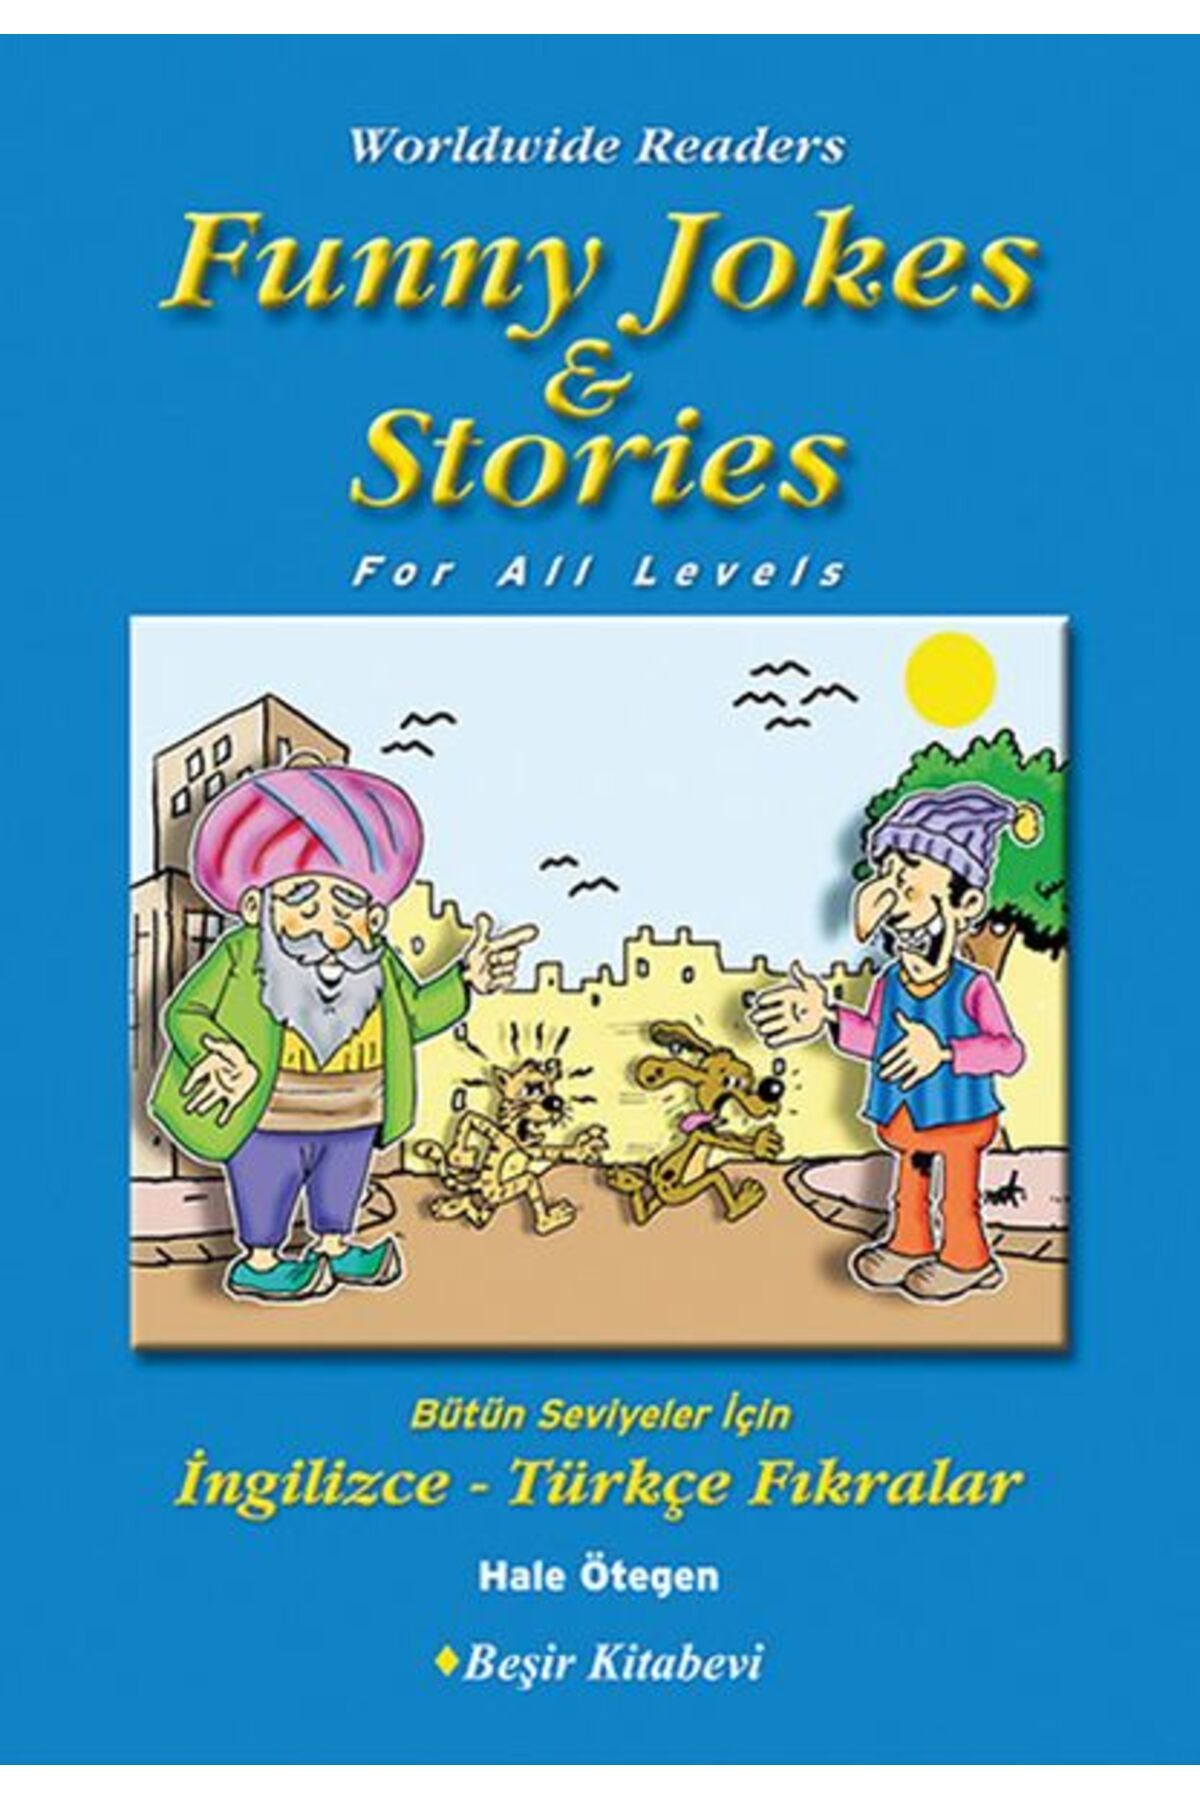 Beşir Kitabevi Funny Jokes Stories Bütün Seviyeler Için Ingilizce Türkçe Fıkralar